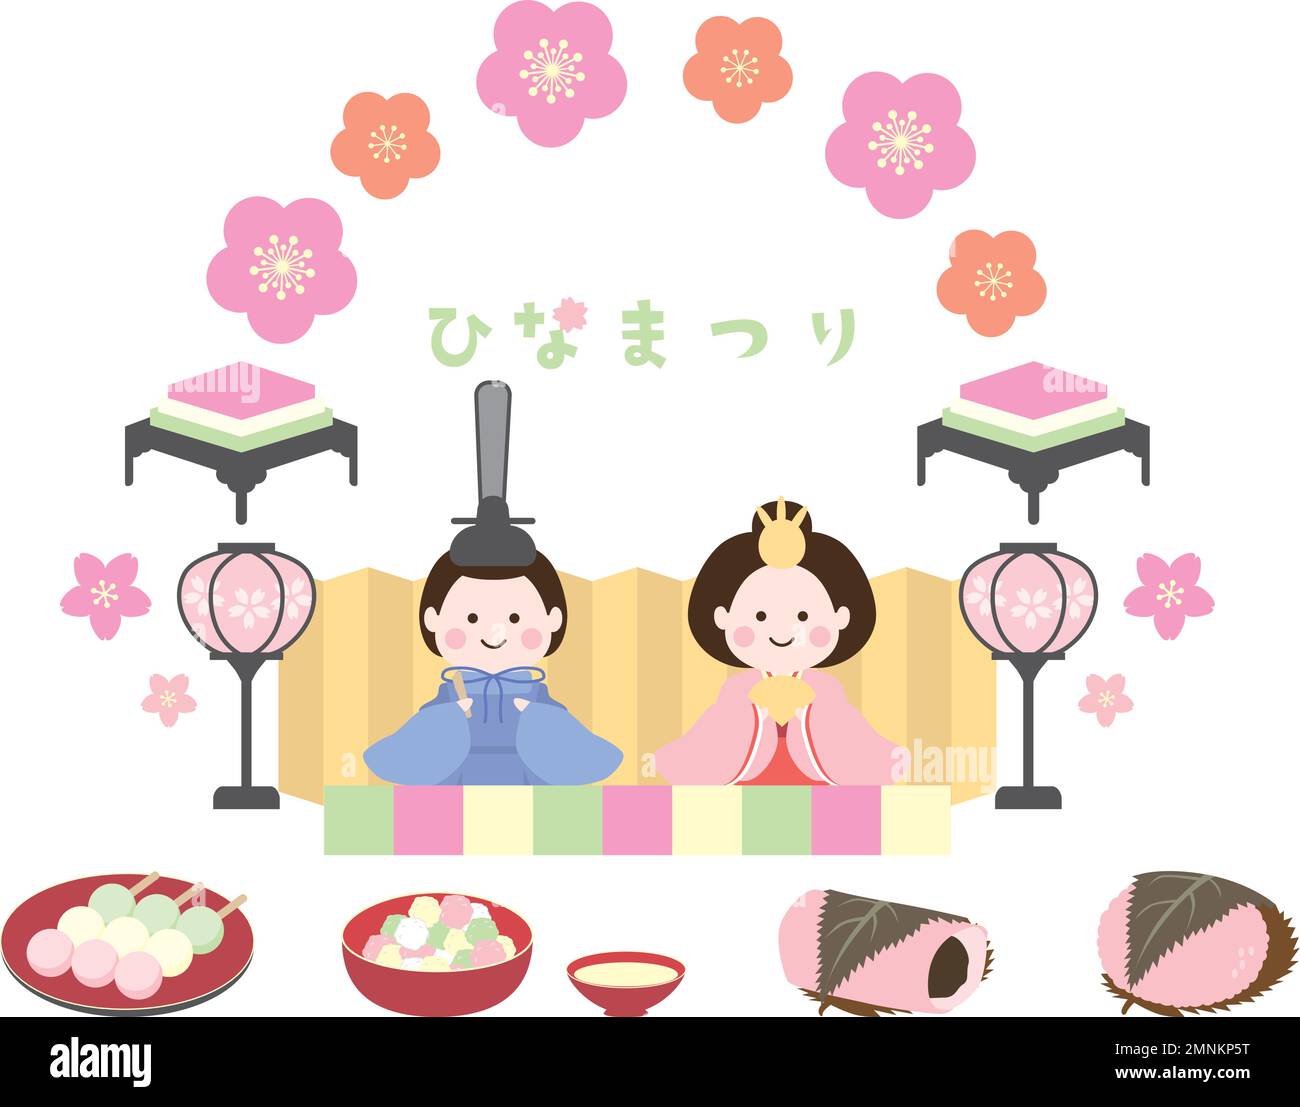 Cornice Hinamatsuri e set di dolci Hinamatsuri. Illustrazioni semplici e graziose in stile piatto. Illustrazione Vettoriale